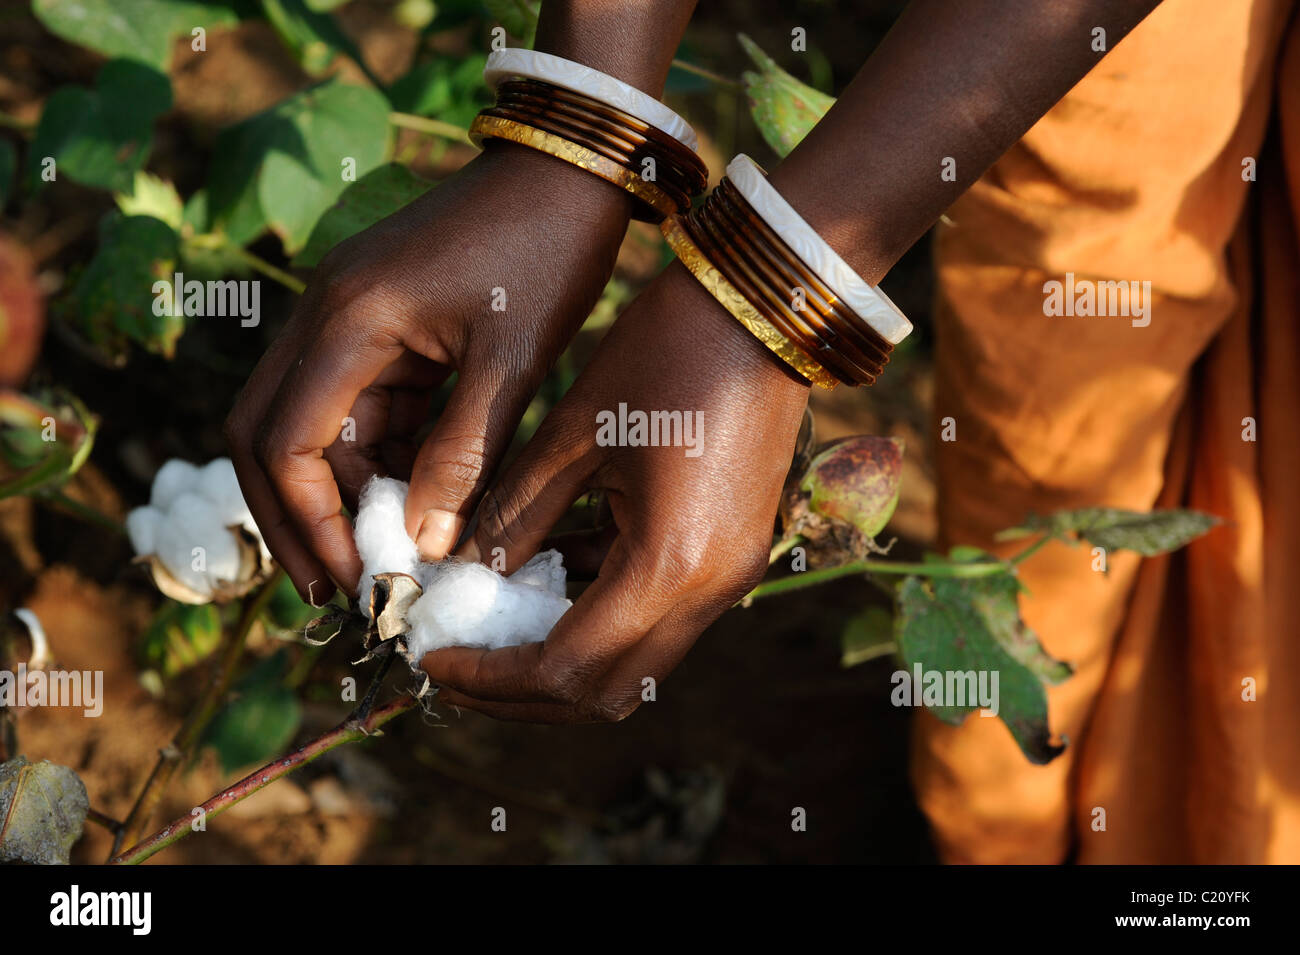 Indien Orissa, fairer Handel und Baumwolle aus biologischem Anbau, die Bauern der Kooperative in der Nähe von Agrocel Schönwald Stockfoto